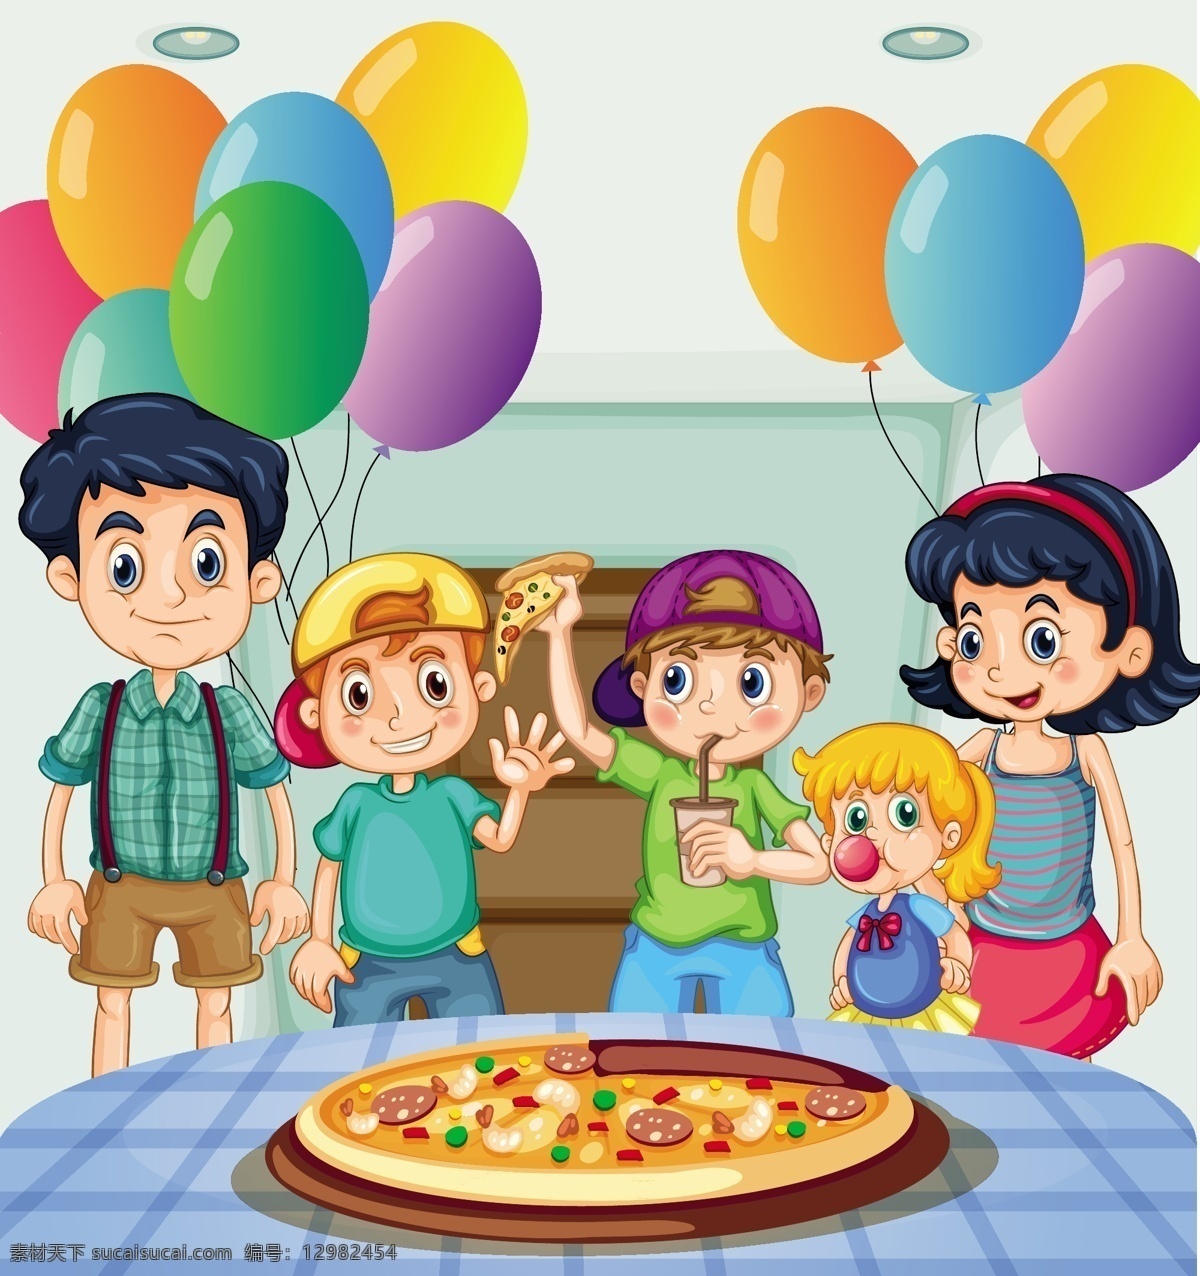 卡通儿童插画 餐食 美食 节日 聚餐 气球 卡通儿童 动作 快乐 卡通 人物 男孩 女孩 学生 户外活动 幼儿园素材 卡通设计